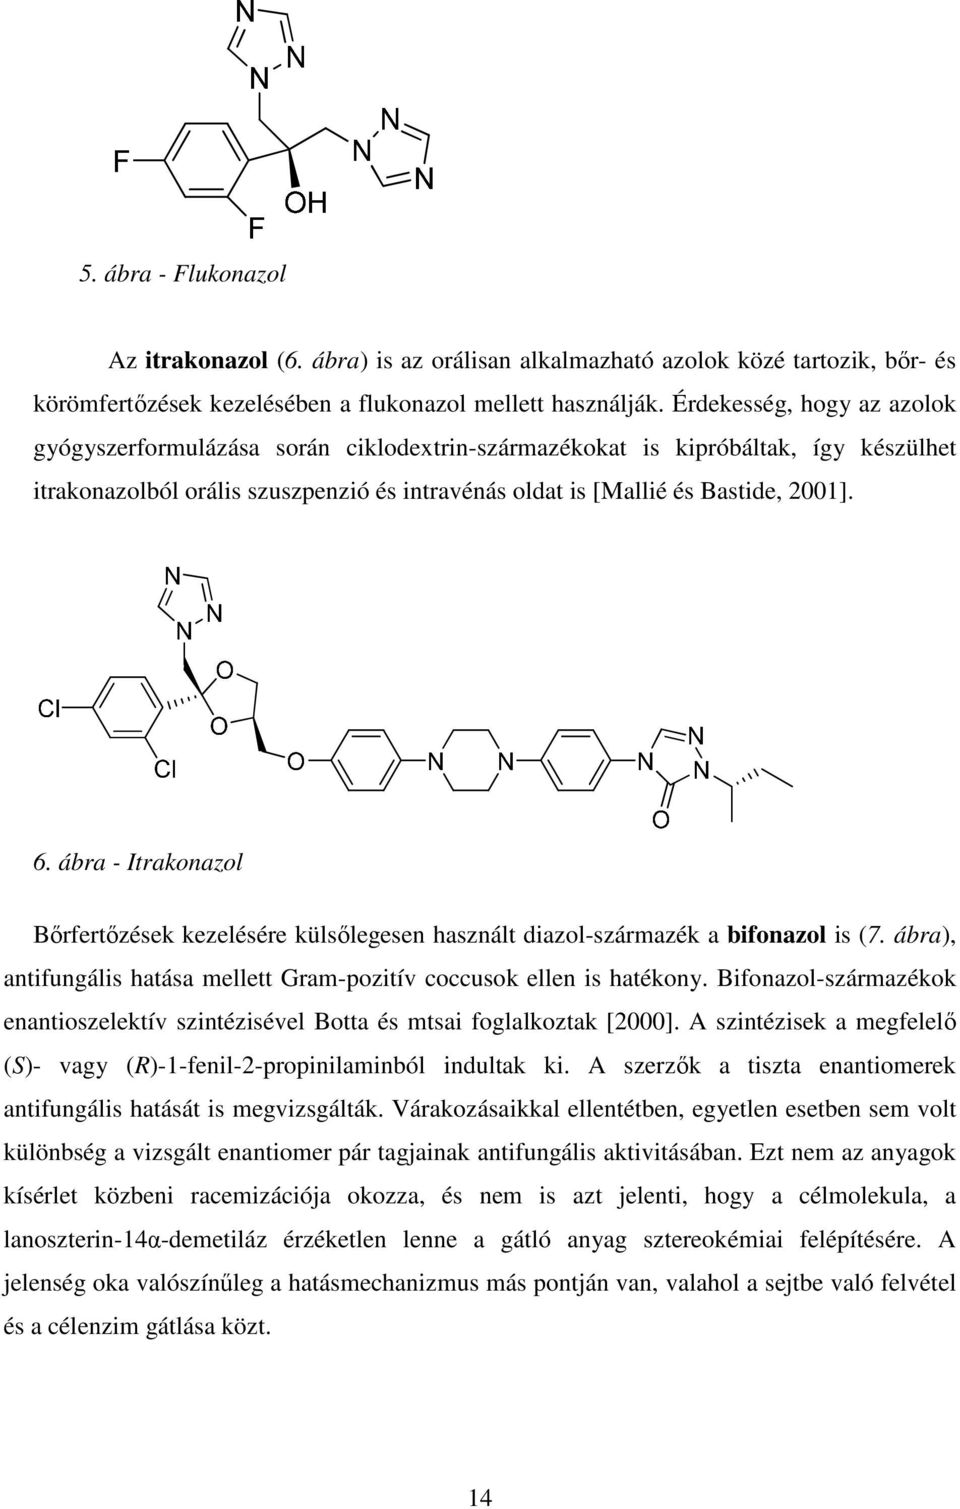 ábra - Itrakonazol Bőrfertőzések kezelésére külsőlegesen használt diazol-származék a bifonazol is (7. ábra), antifungális hatása mellett Gram-pozitív coccusok ellen is hatékony.